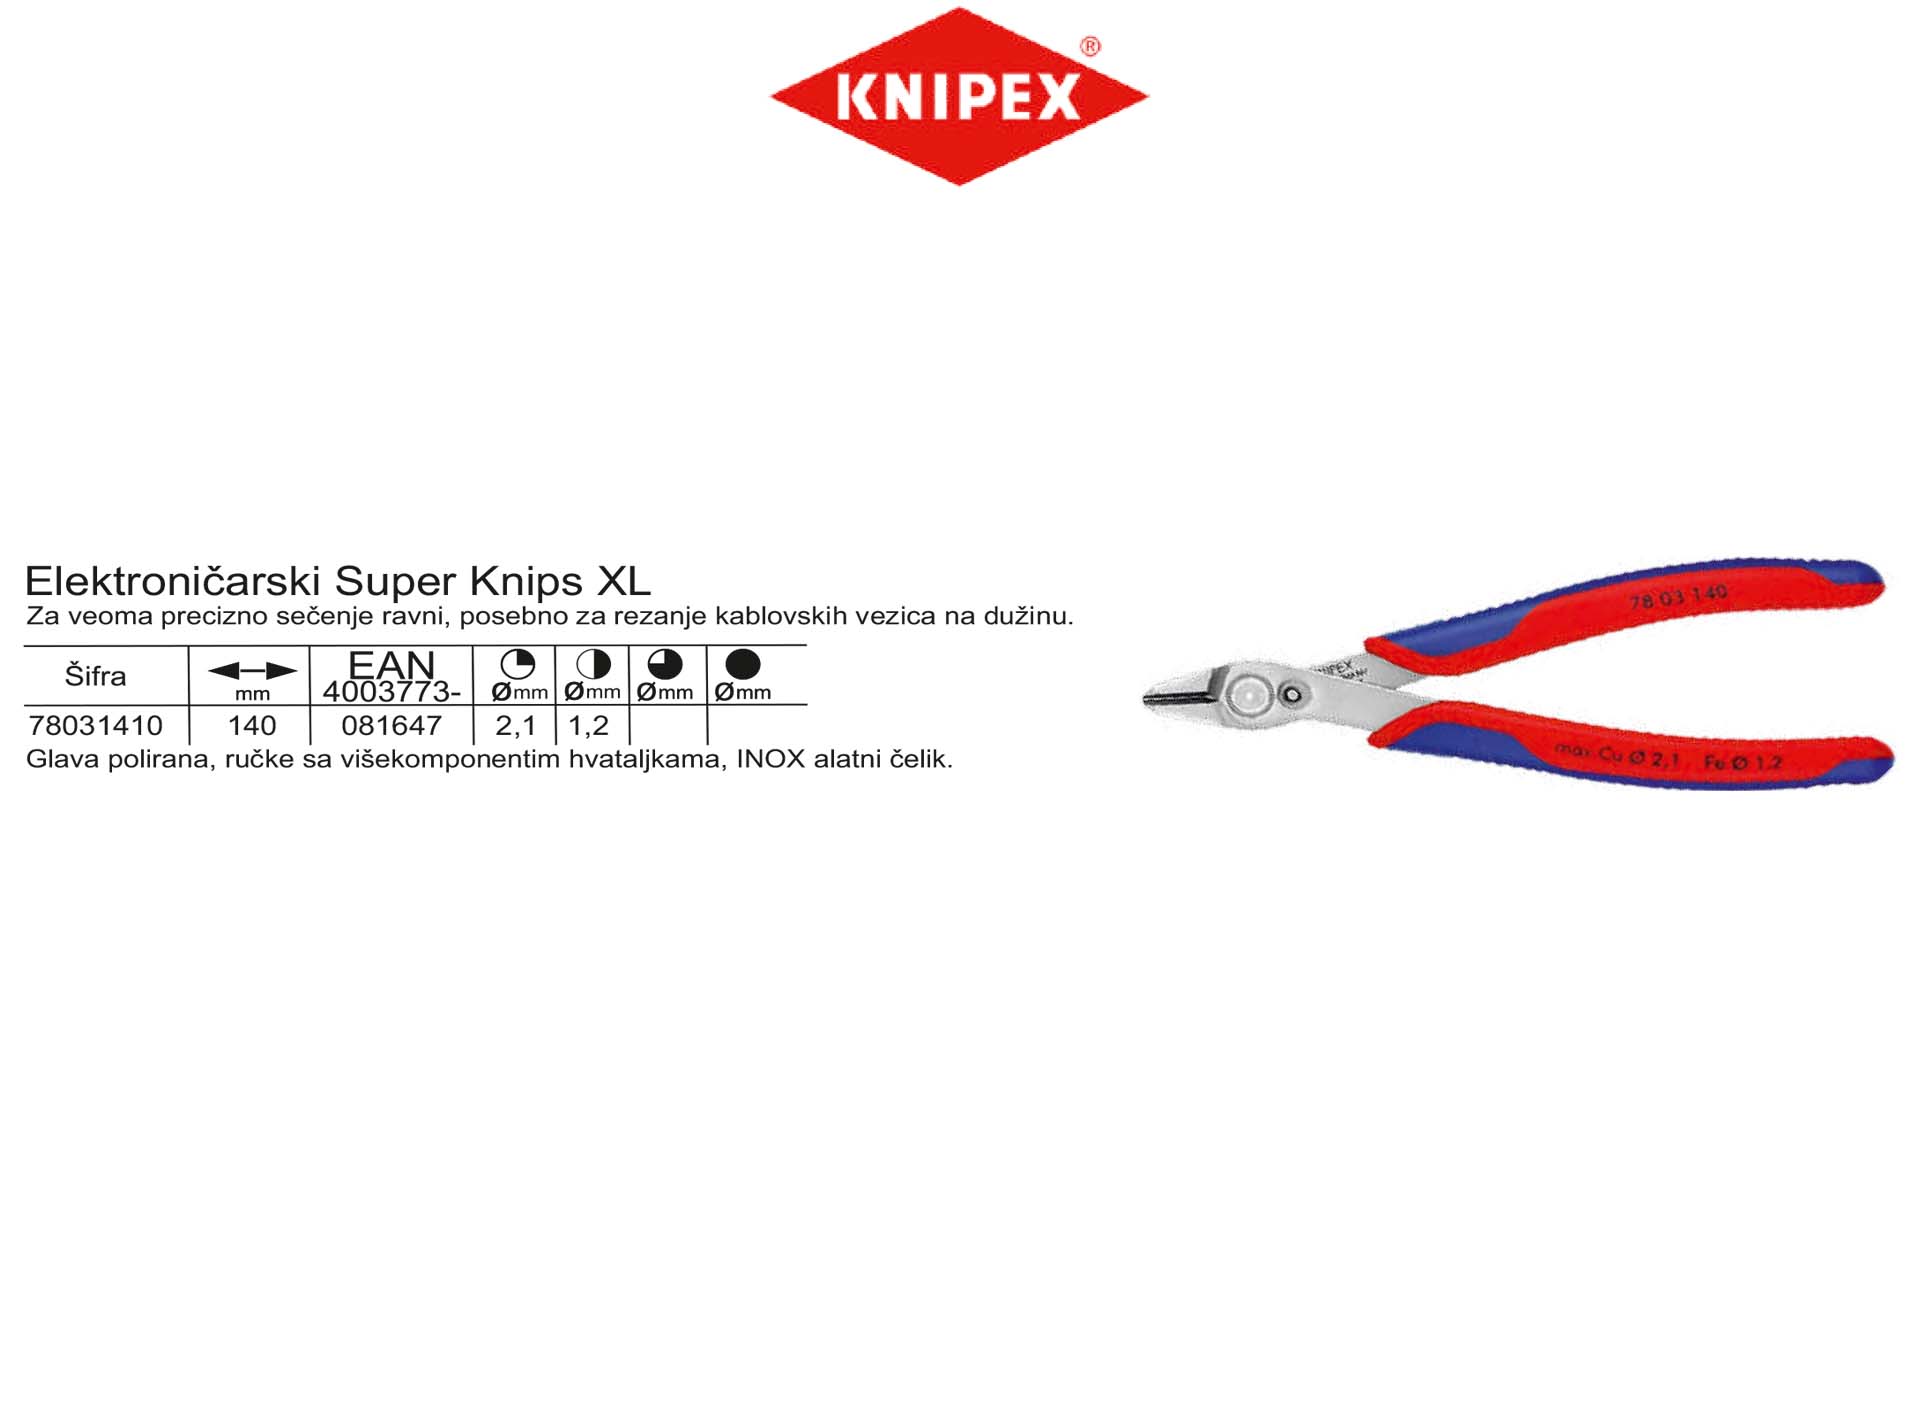 Elektroničarski Super Knips XL